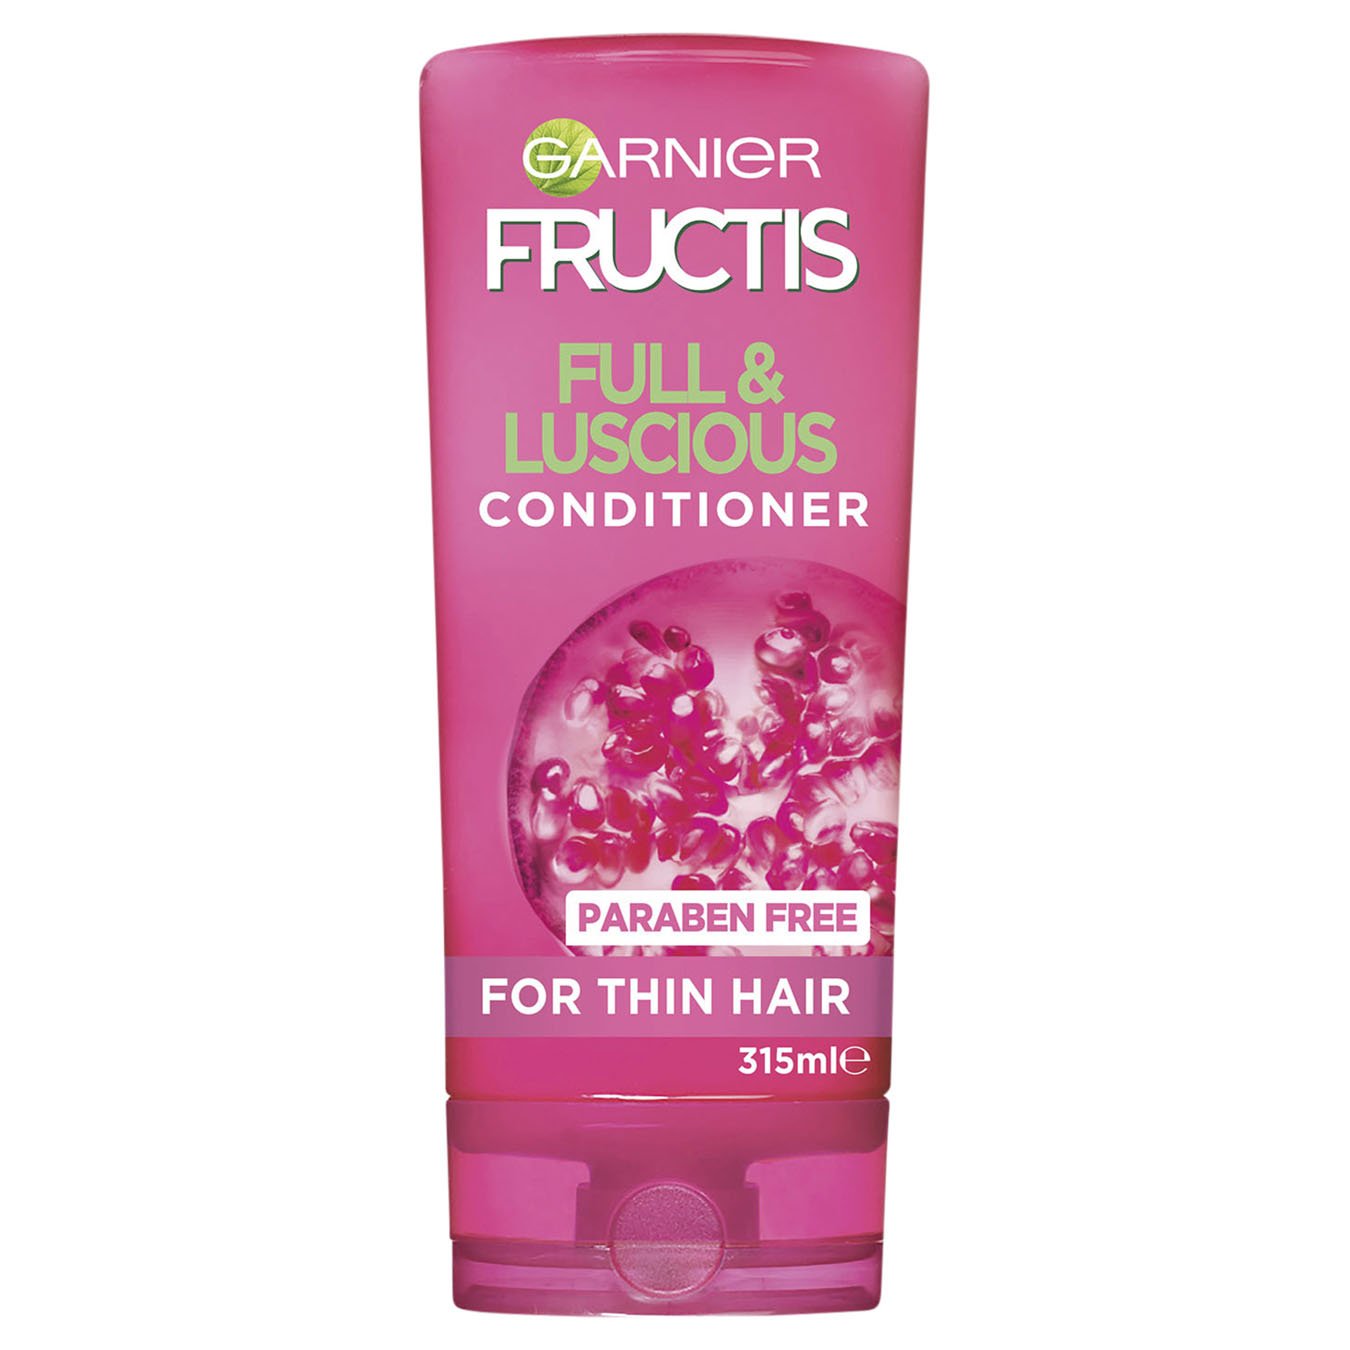 Fructis Full & Luscious Conditioner